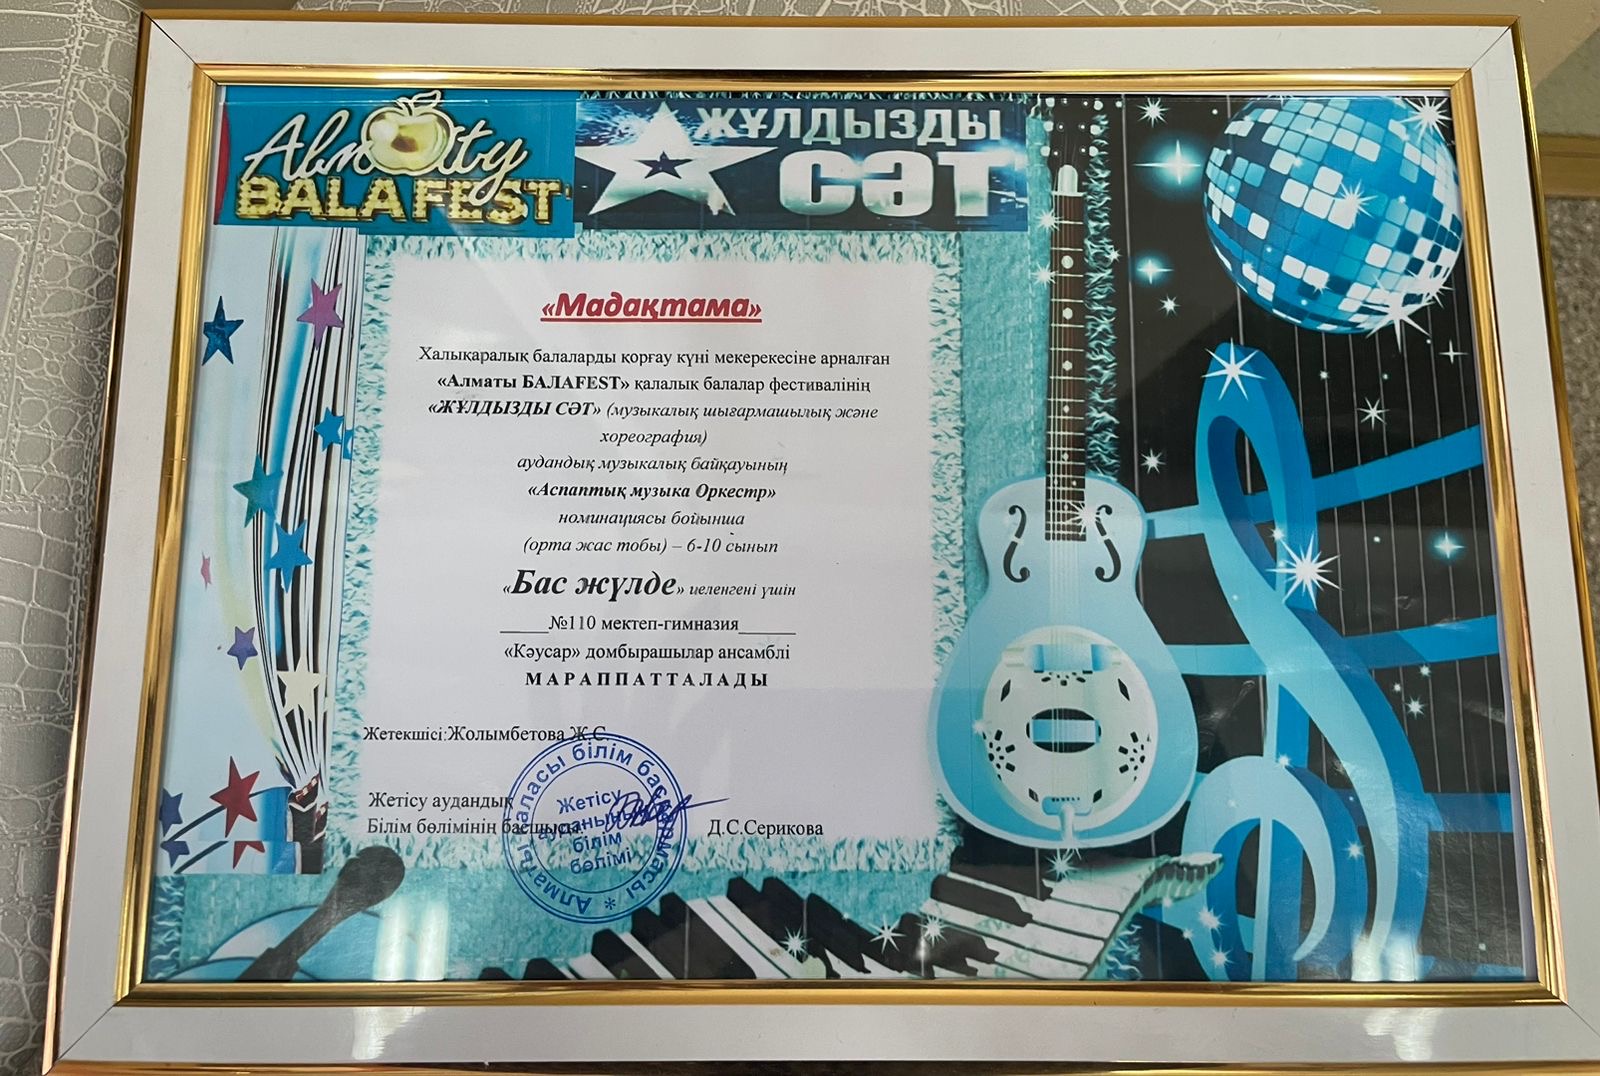 Халықаралық балалар күні мерекесіне арналған «Алматы БАЛАFEST» балалар фестивалі аясында “Жұлдызды сәт”